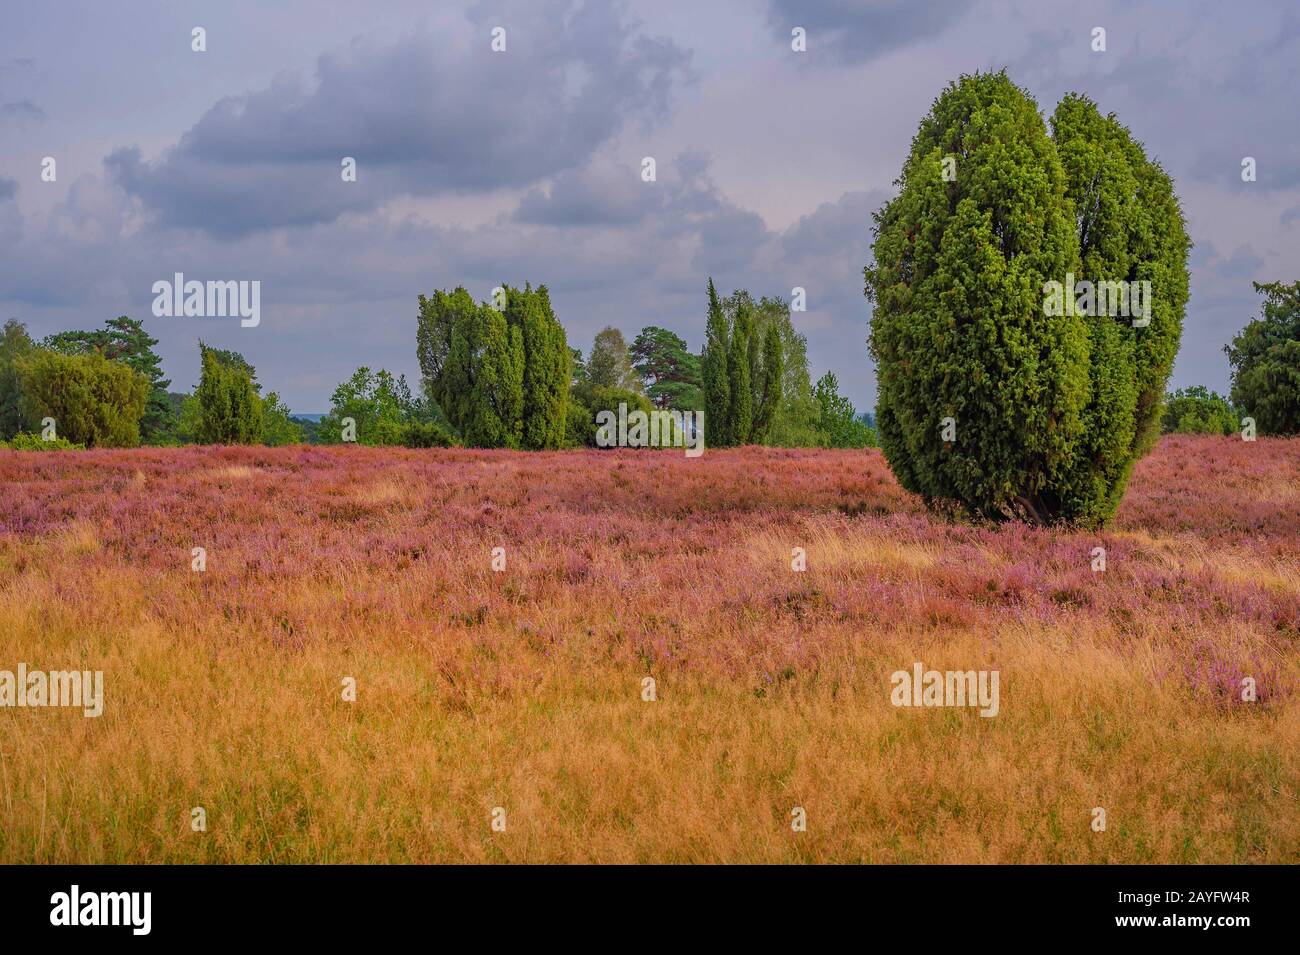 Genévrier commun, genévrier (Juniperus communis), heath à Lueneburger Heide, Lueneburg Heath, Allemagne, Basse-Saxe, Wilsede Banque D'Images